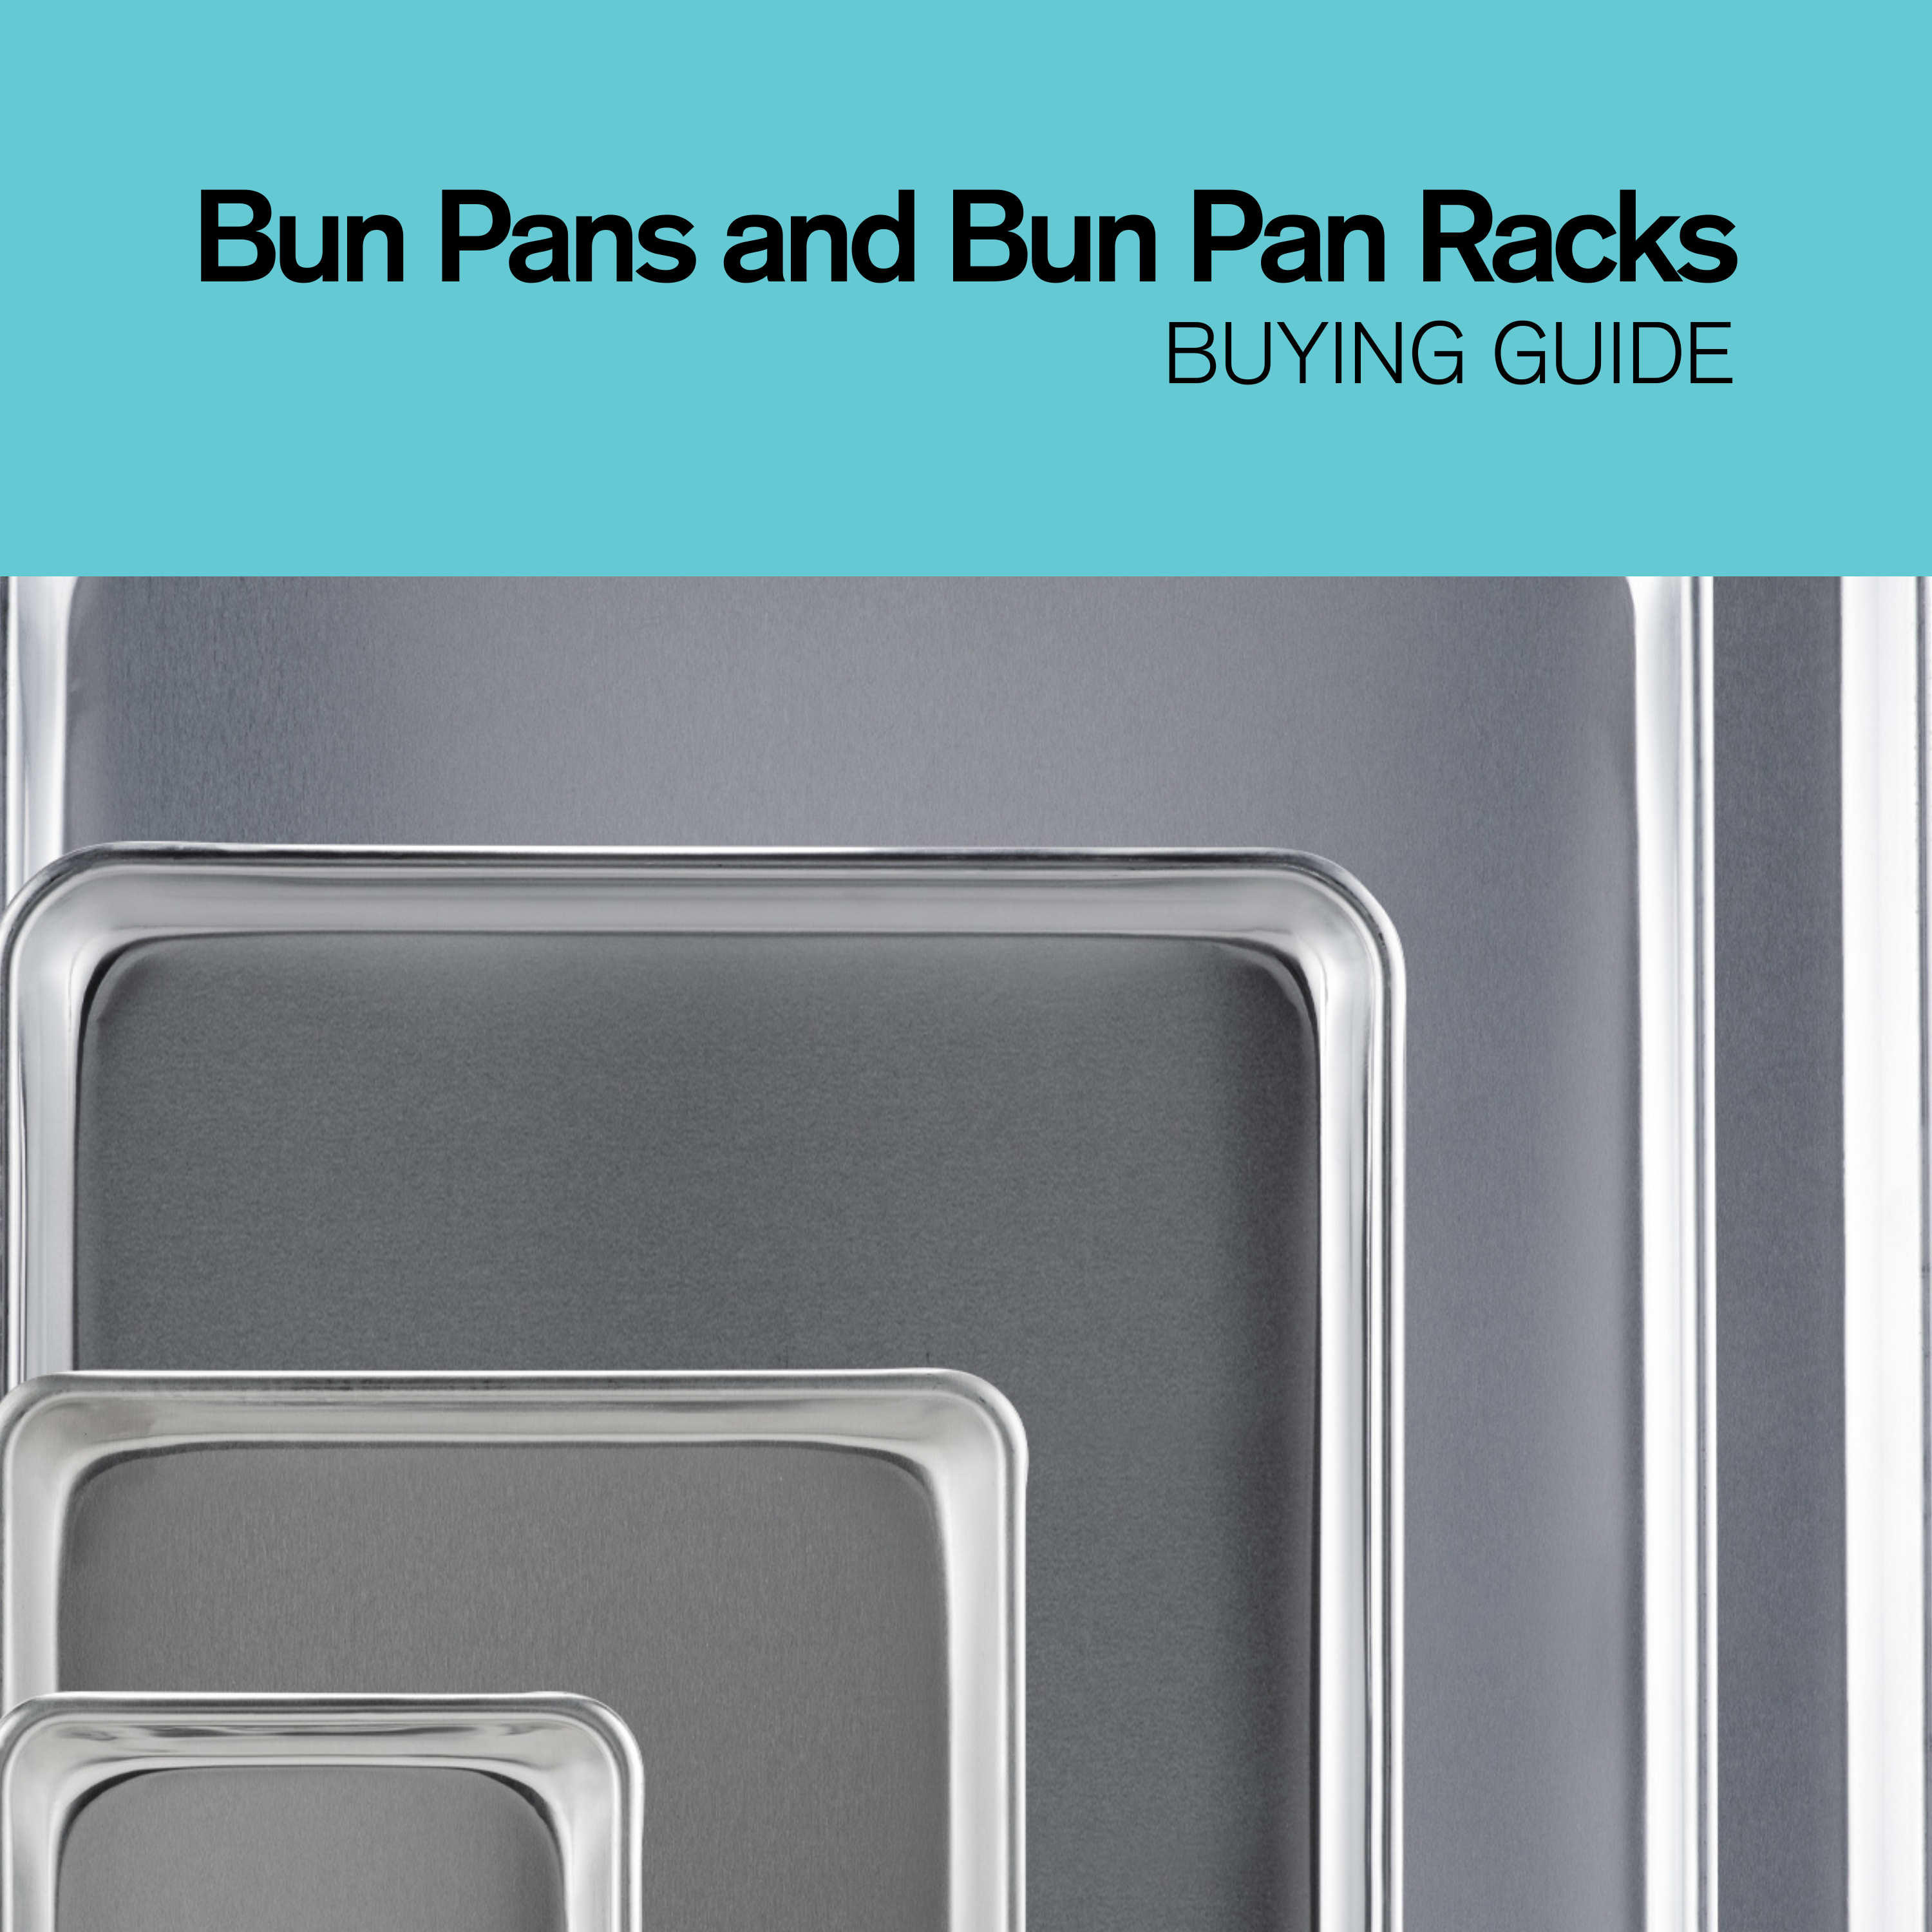 Sheet Pan Rack Half Size, Bun Pan Racks